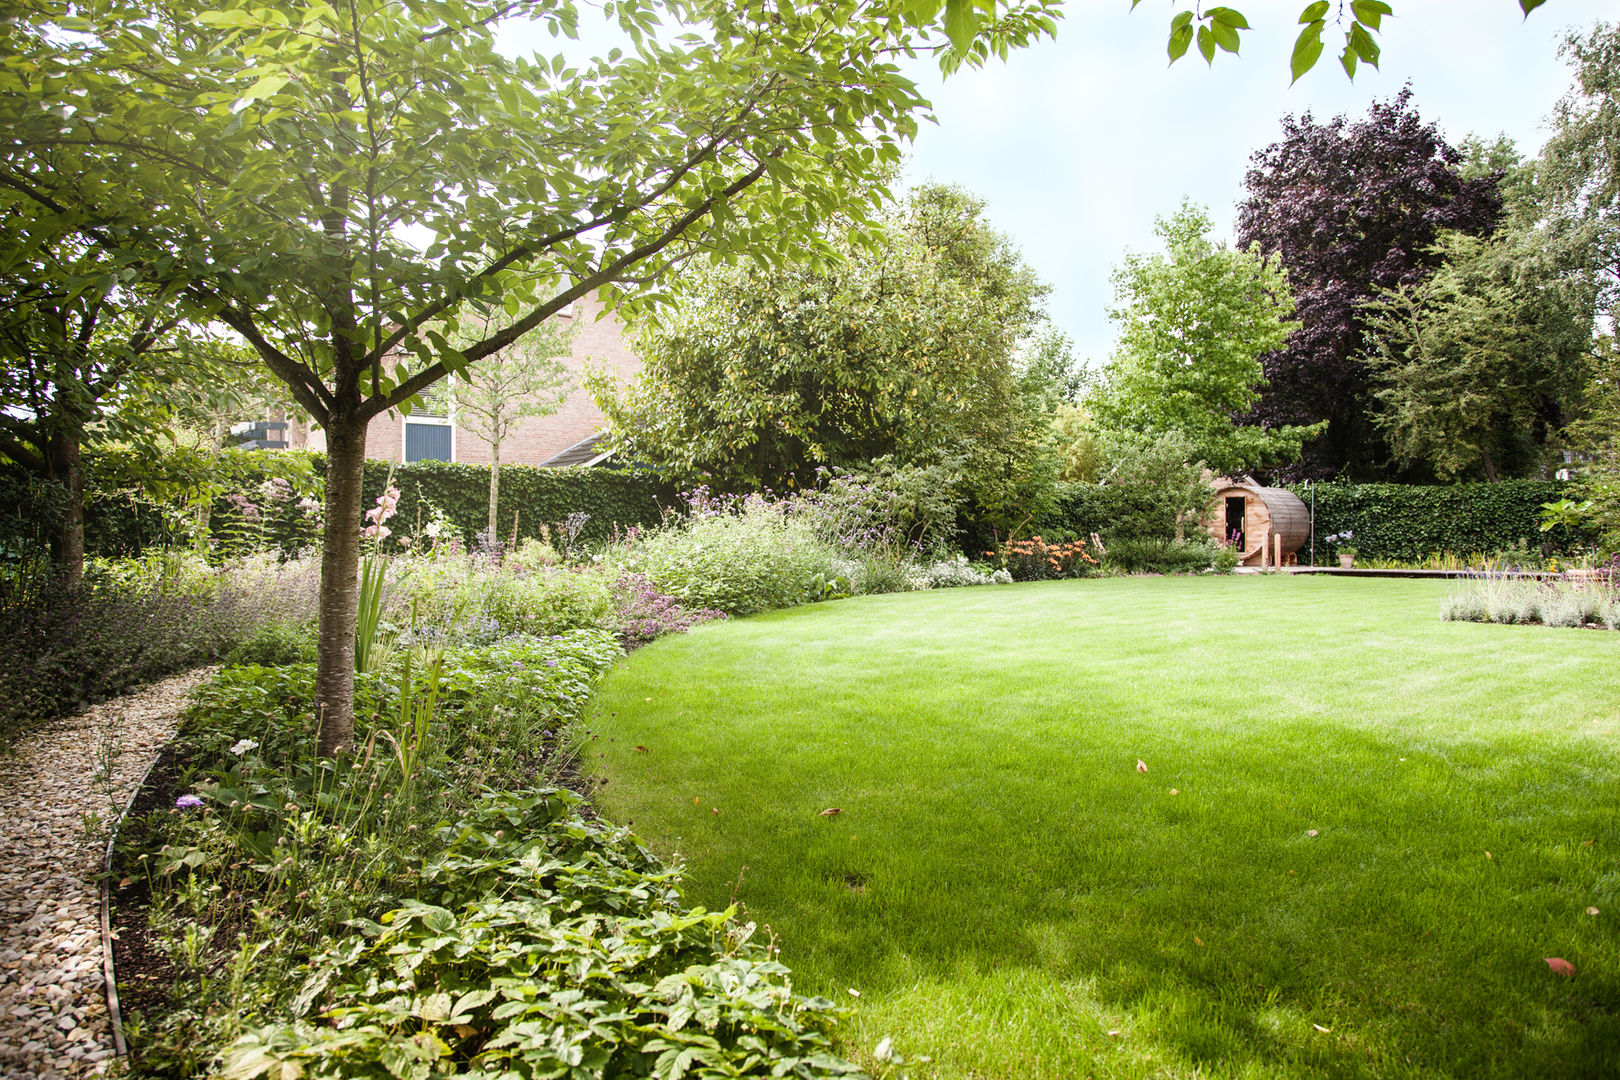 Wellness tuin verbonden met het landschap, Studio REDD exclusieve tuinen Studio REDD exclusieve tuinen Country style garden